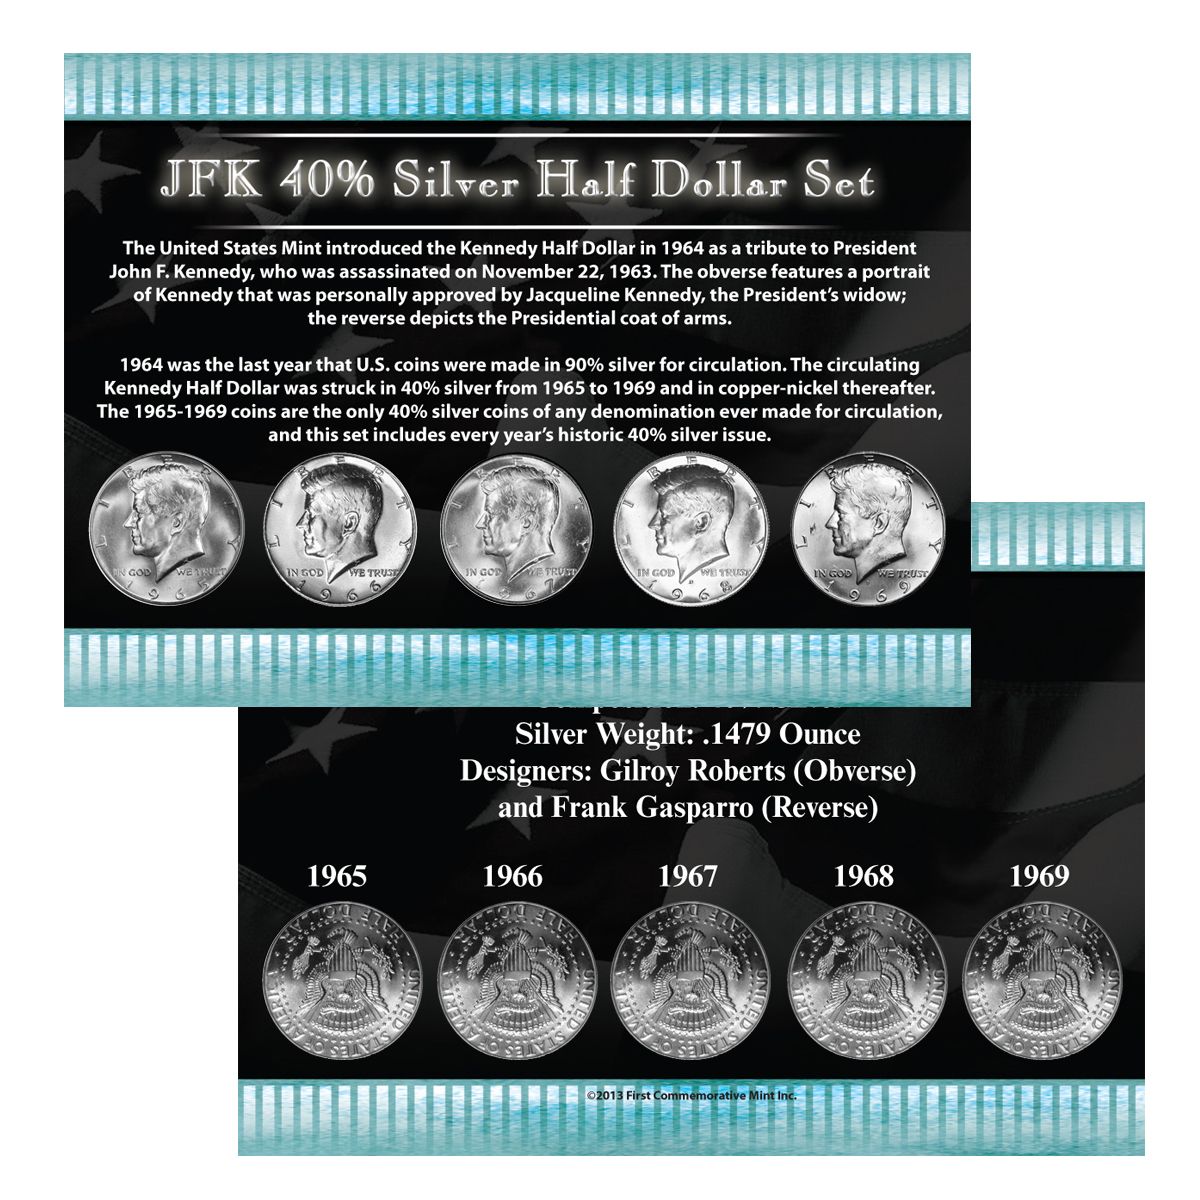 Lot of 5 Black Felt COIN GIFT METAL BOX for 1-Quarter plus 1-Half Dollar US JFK 